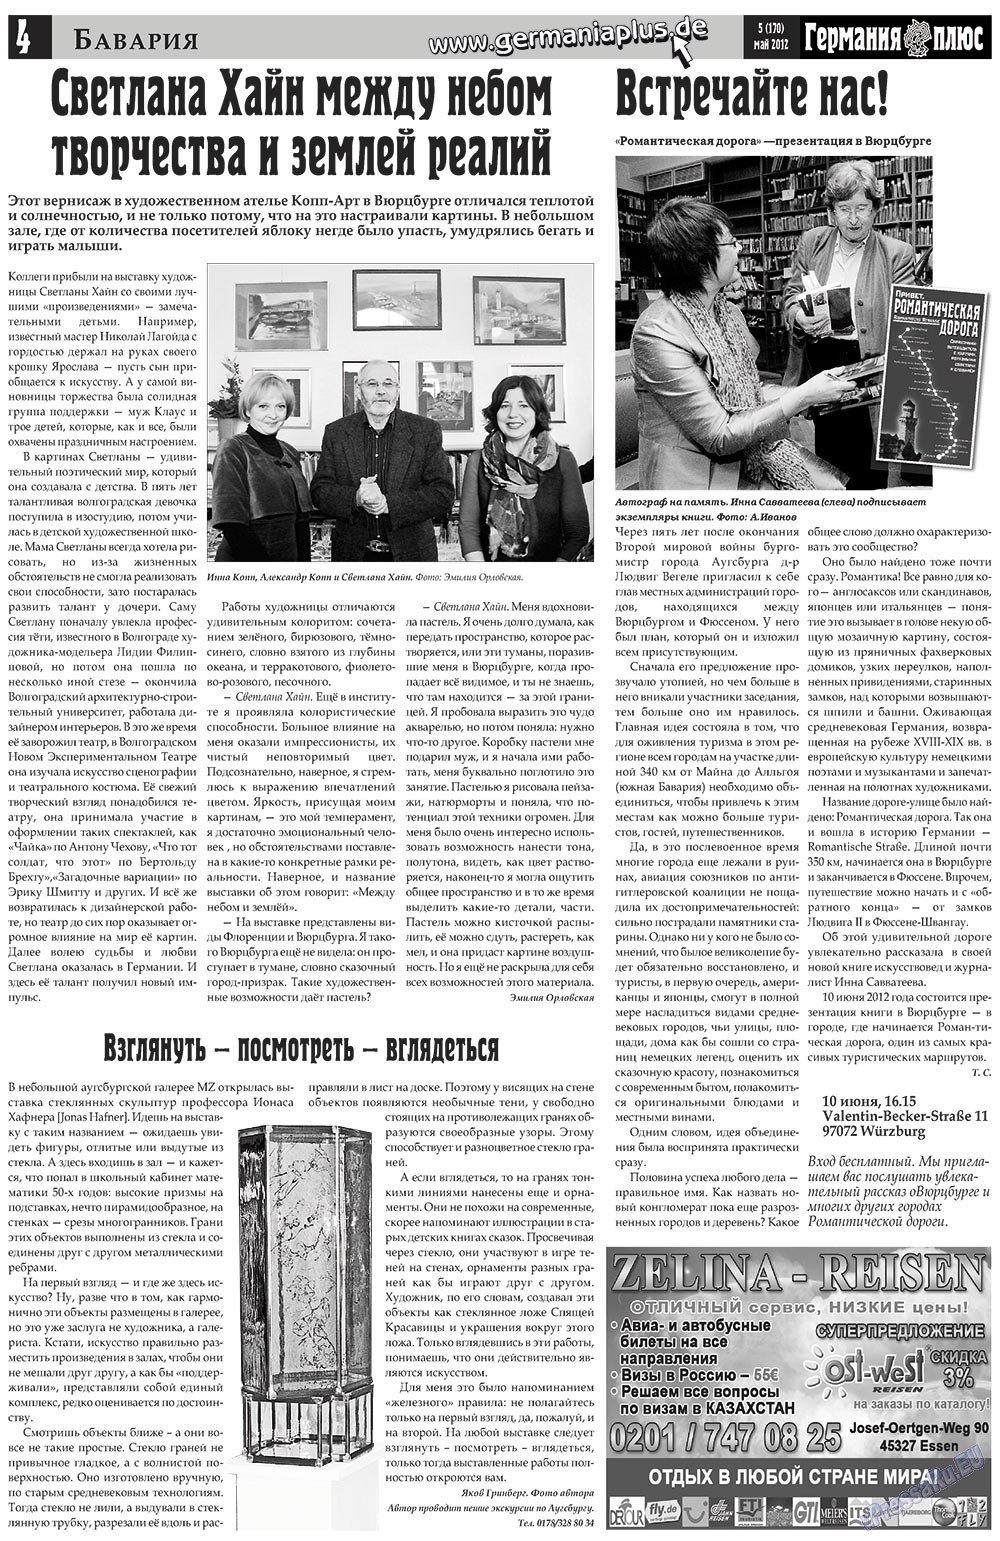 Германия плюс, газета. 2012 №5 стр.4